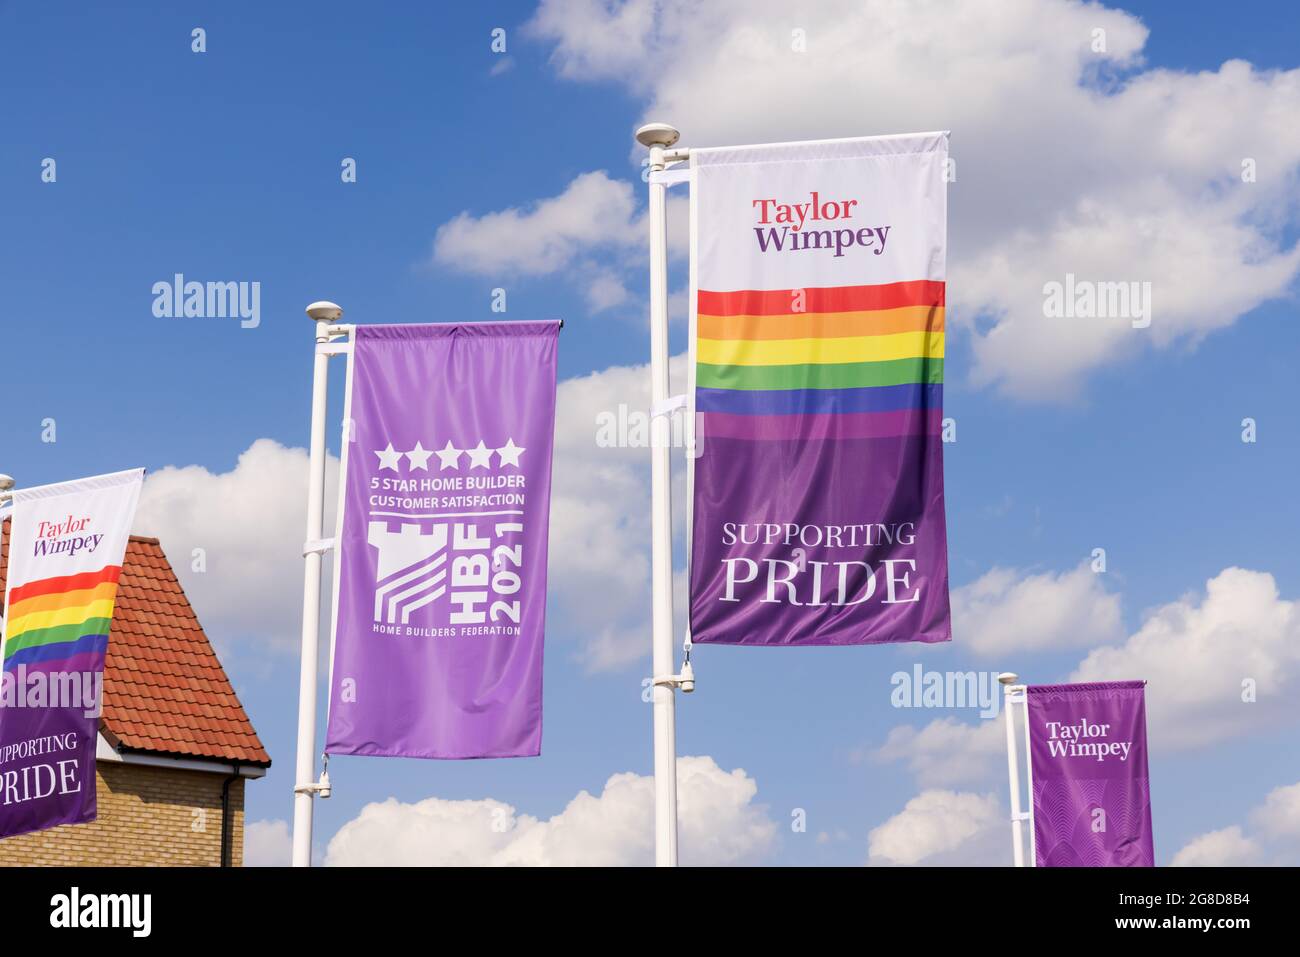 Taylor Wimpey bandiera di pubblicità che sostiene Pride ad un nuovo sviluppo di alloggi. REGNO UNITO Foto Stock